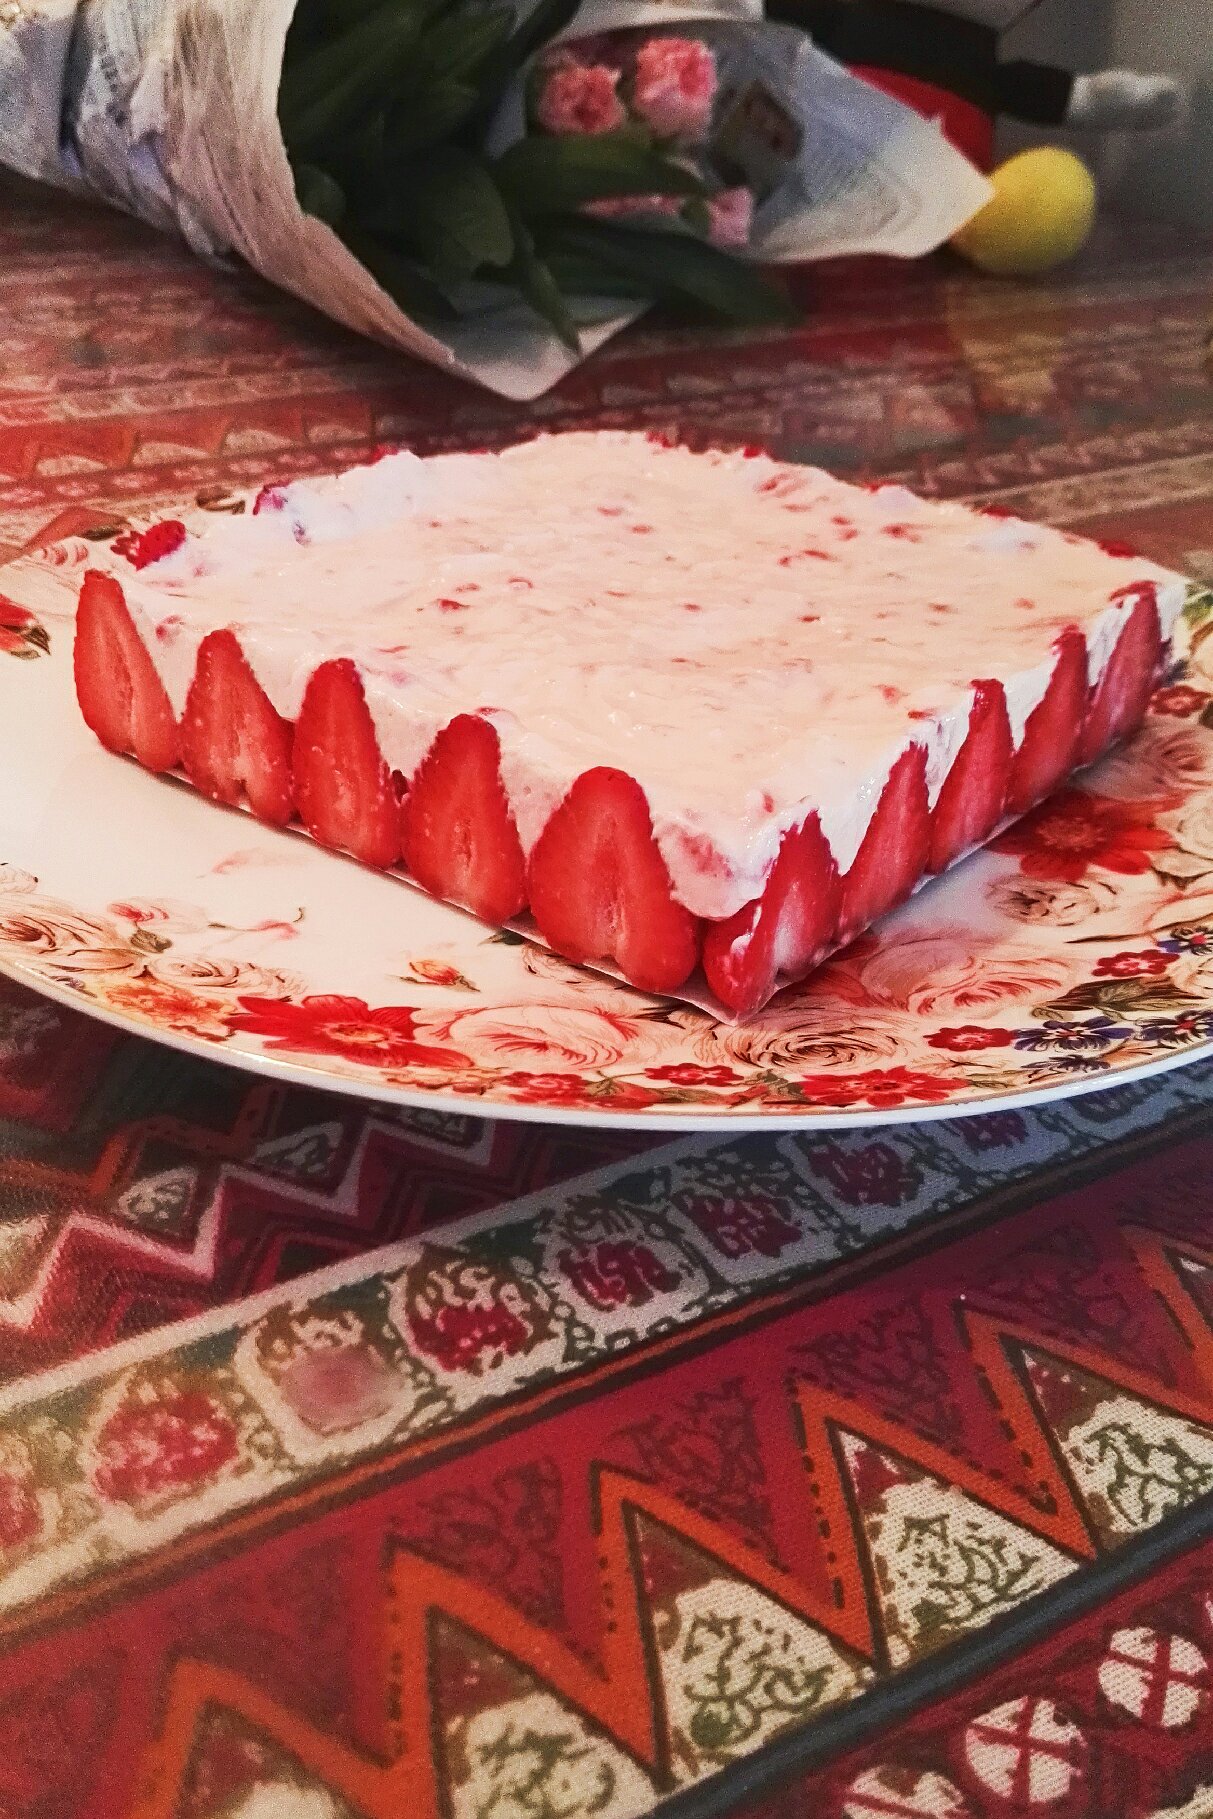 冻草莓芝士蛋糕（Berry Berry冰激凌）